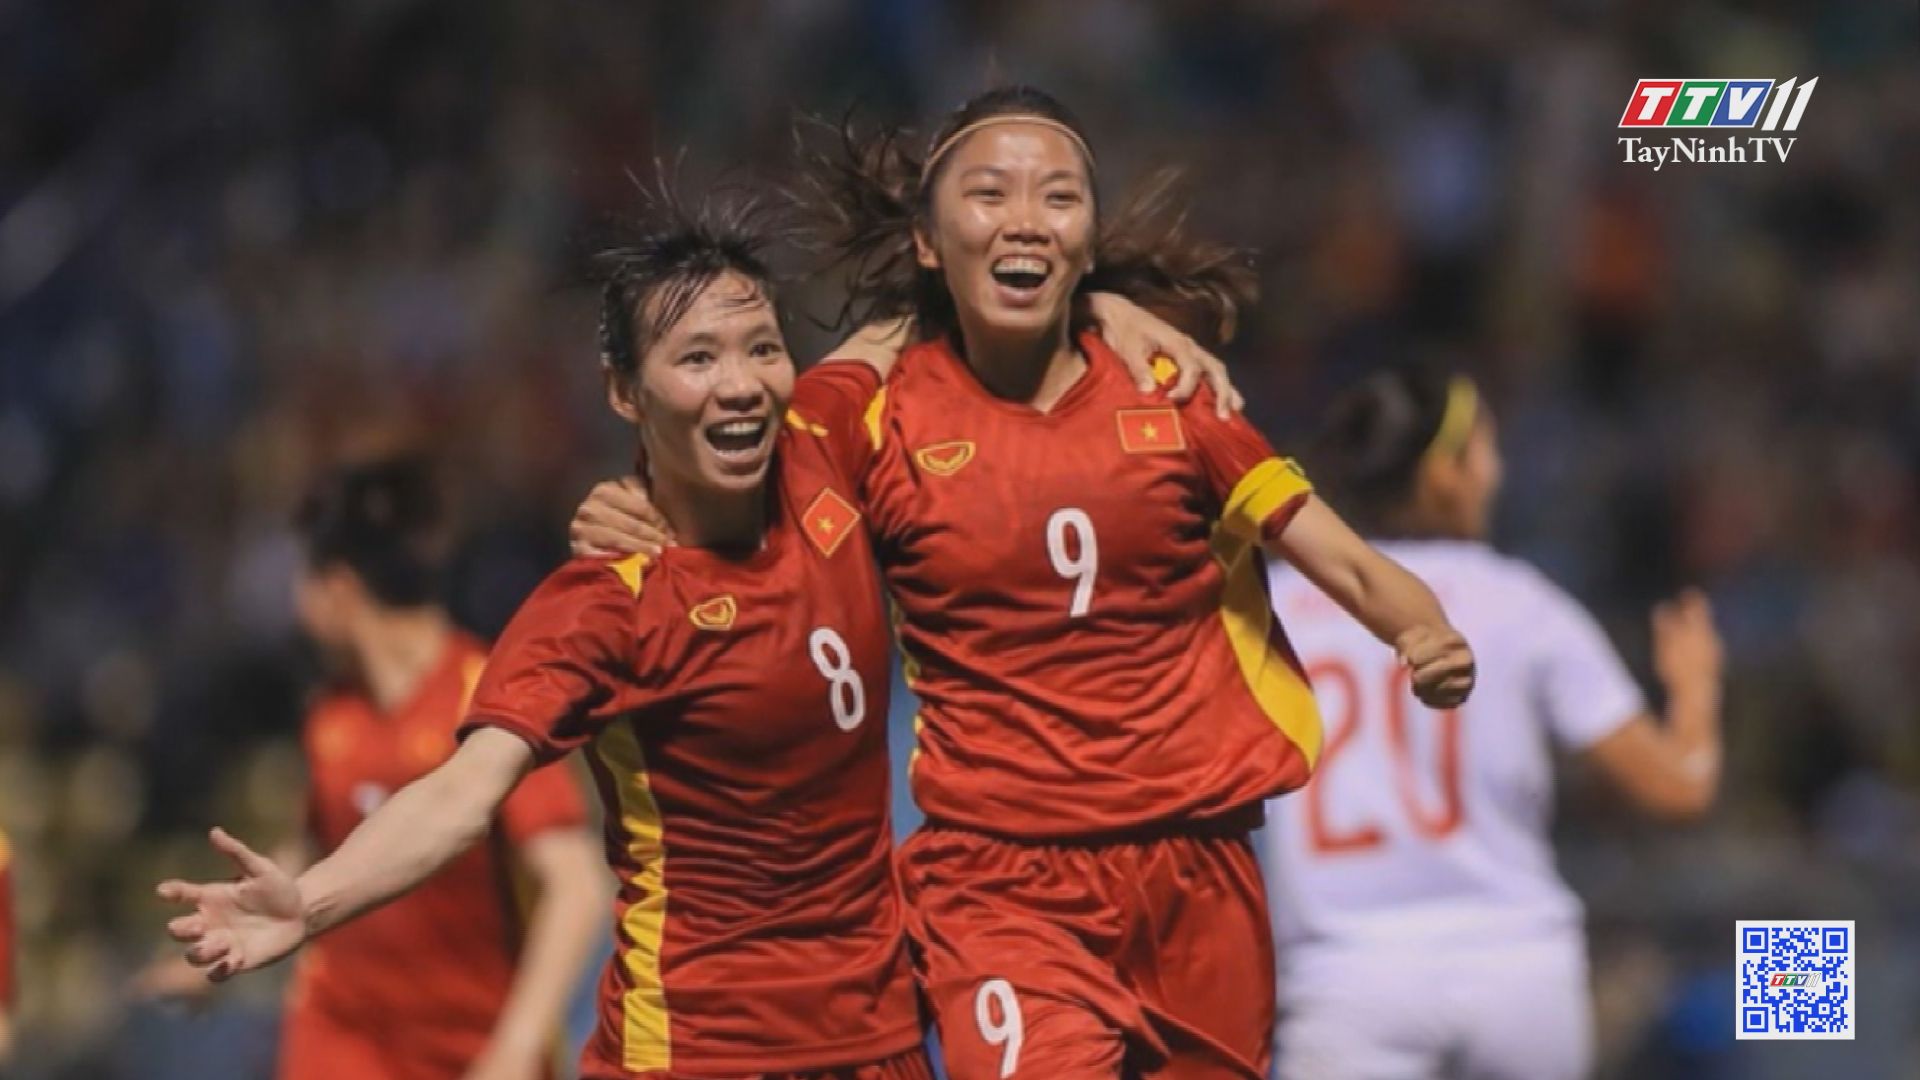 Cuộc đối đầu giữa Việt Nam và Thái Lan ở chung kết bóng đá nữ Sea Games 31 | Hòa nhịp Sea Game | TayNinhTVE